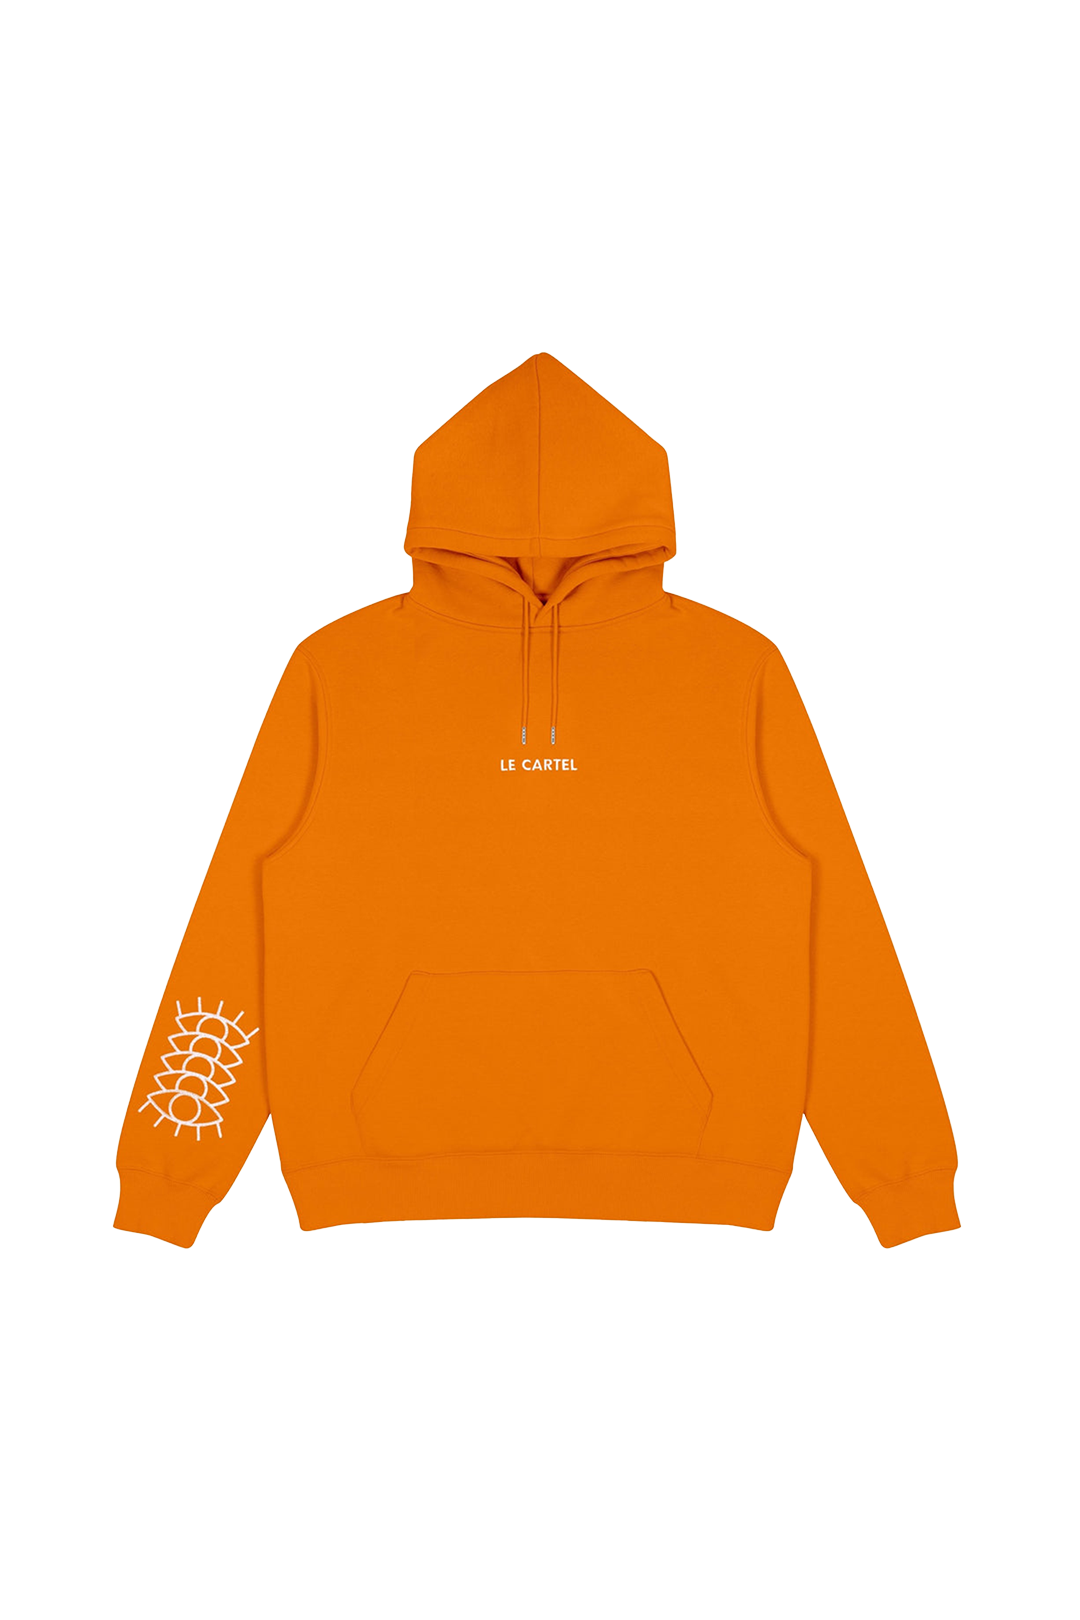 ALL EYES ON ME・Unisex hoodie・Orange